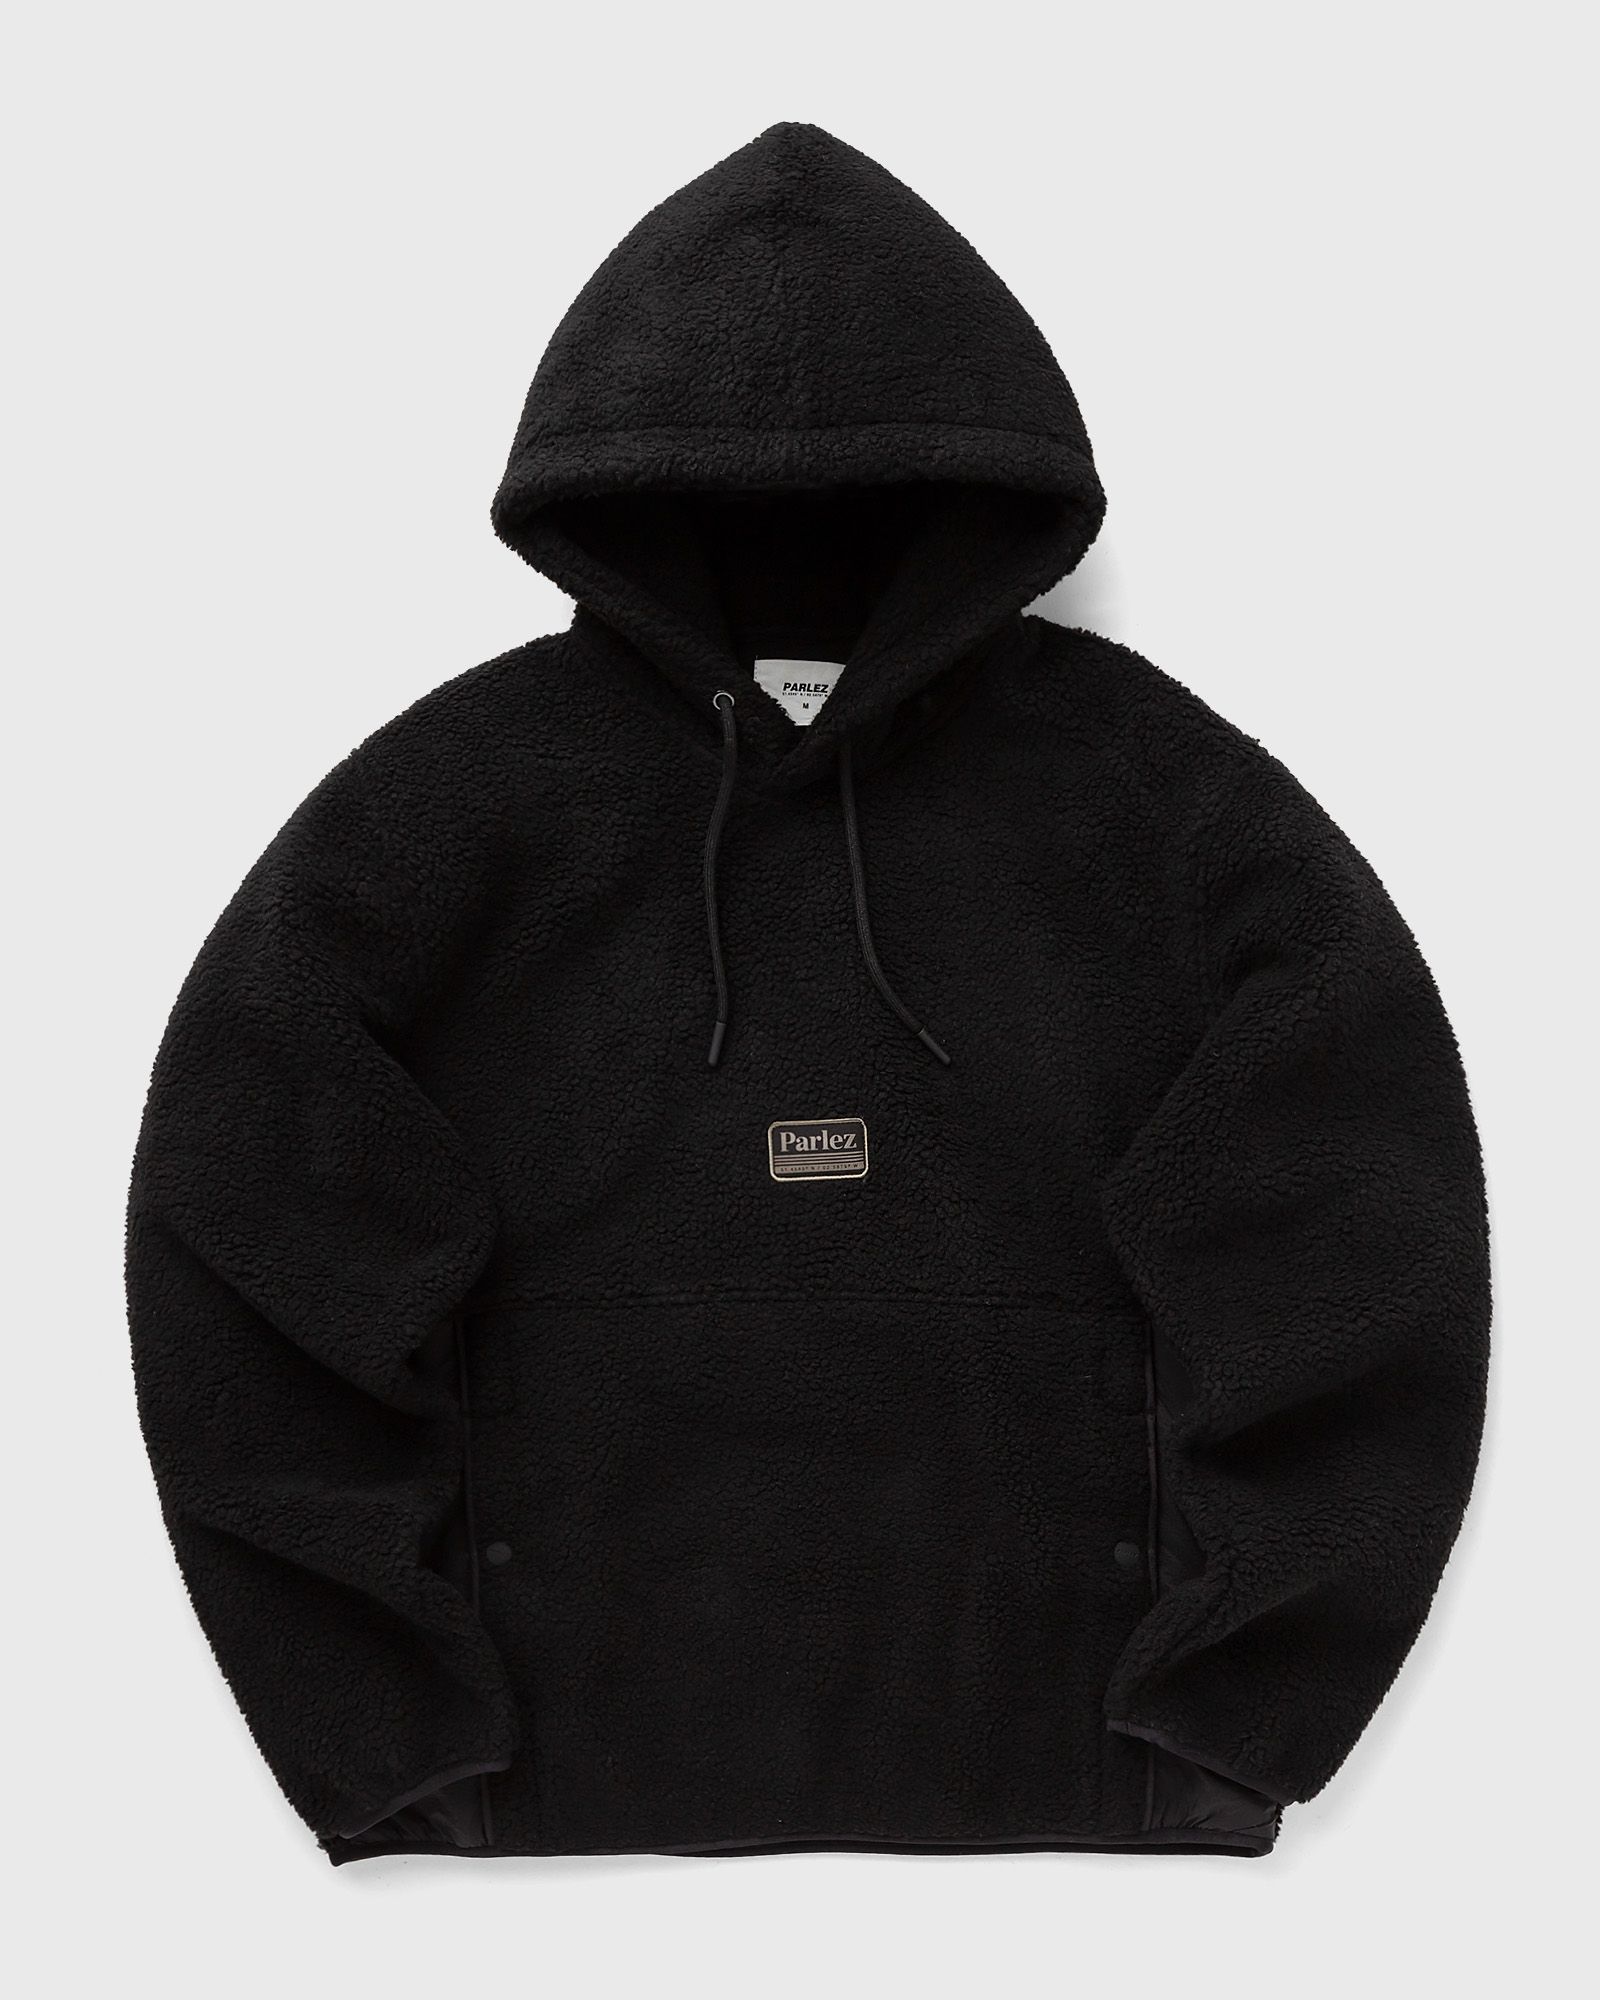 Parlez - carval hood men hoodies black in größe:m